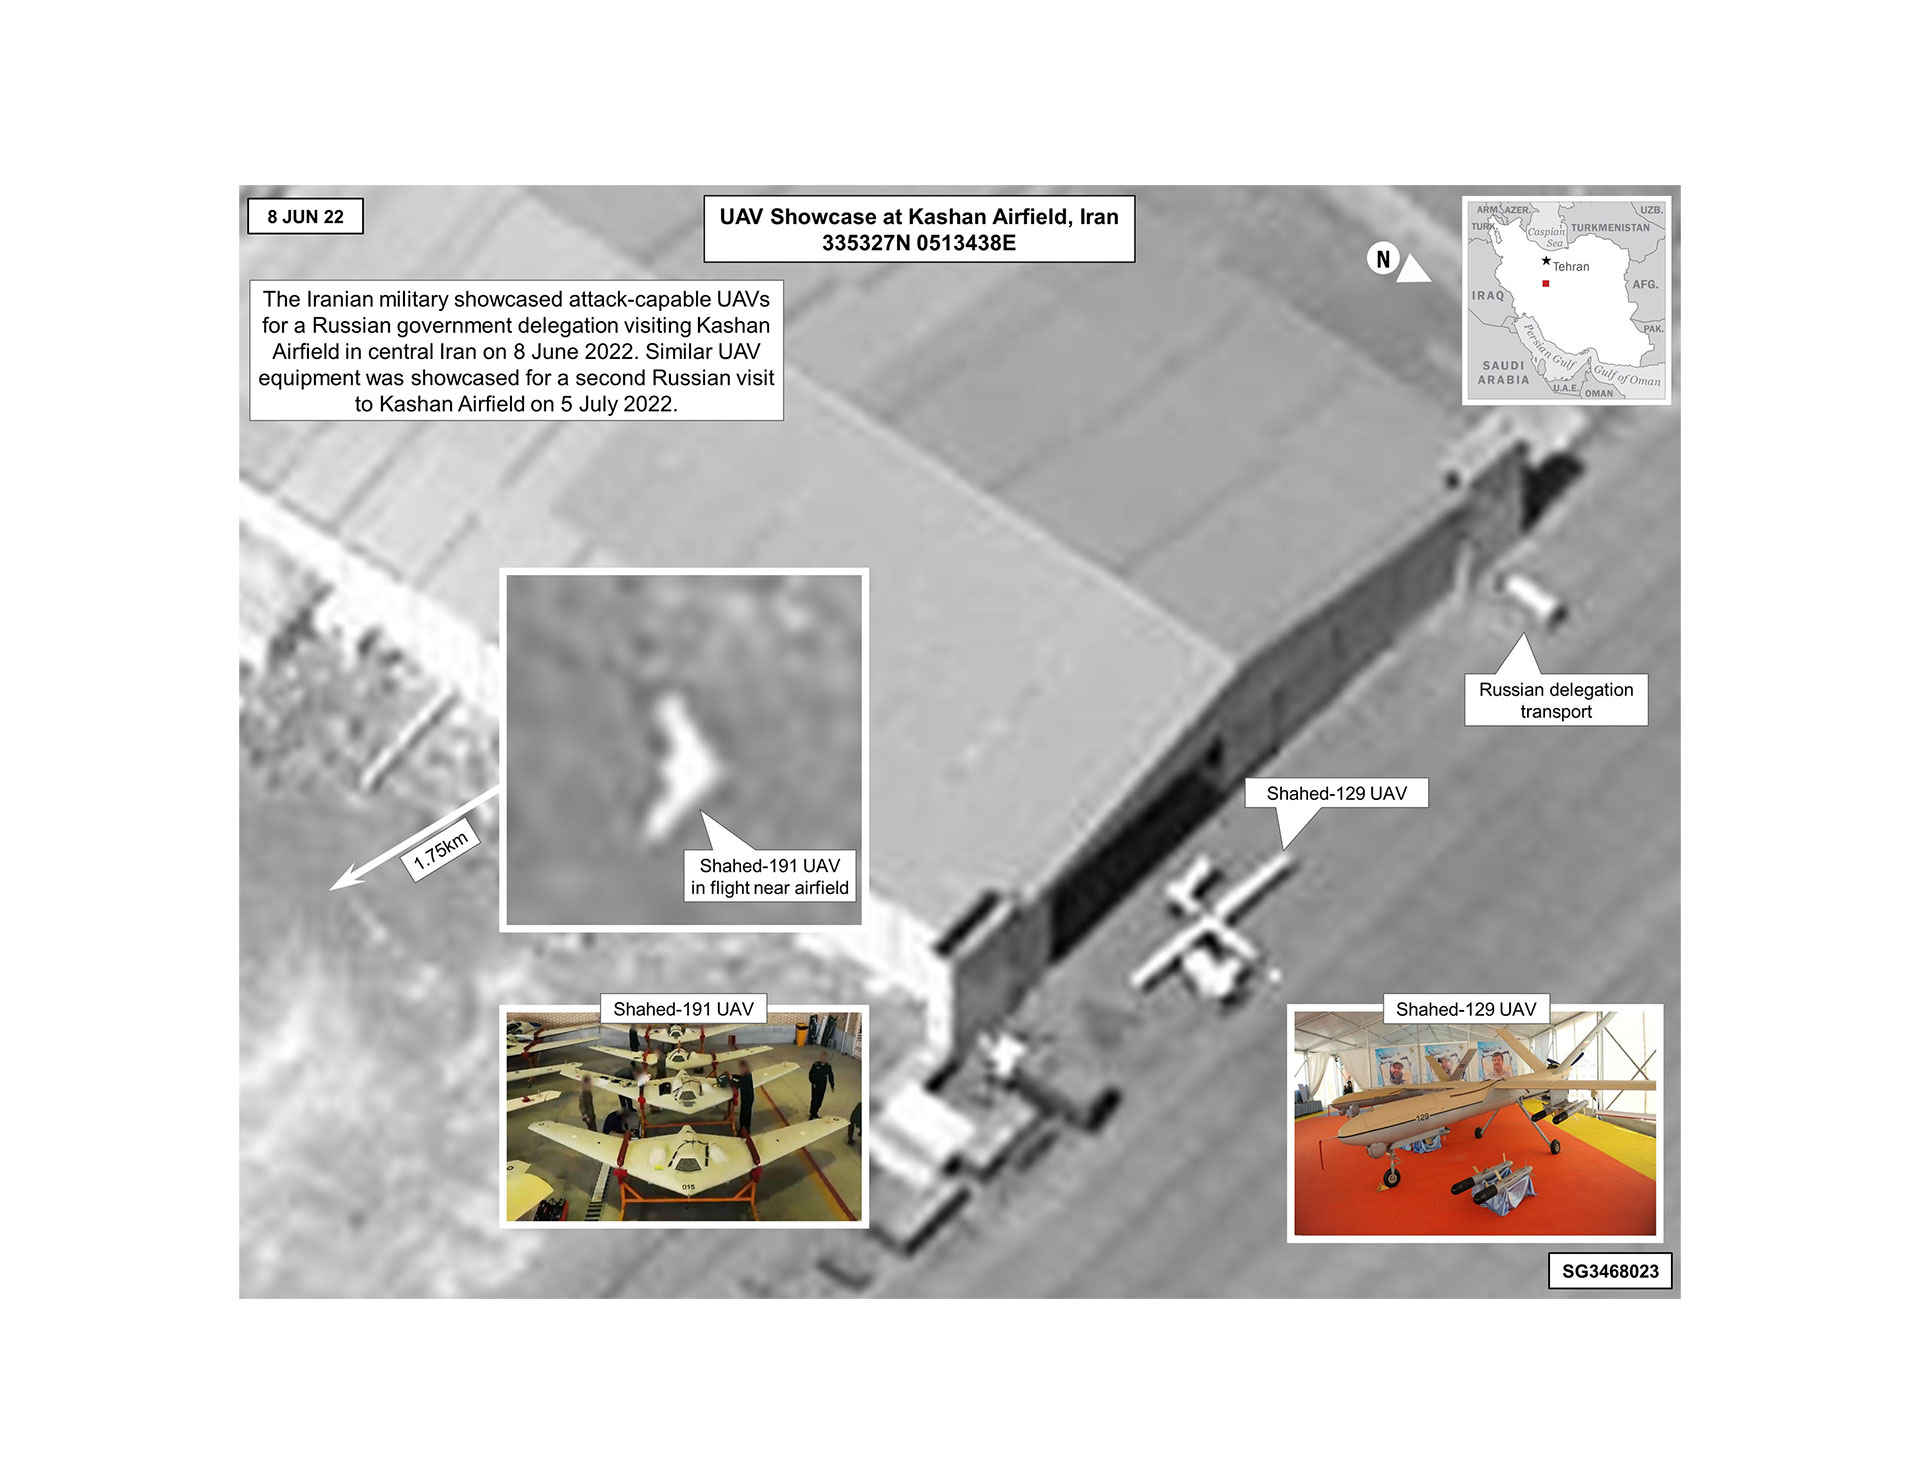 Imagen facilitada por Casa Blanca de fotos obtenidas vía satélite en las que, según EEUU, se ve cómo los iraníes estaban haciendo una demostración a una delegación rusa del funcionamiento de dos tipos de drones, el Shahed 191 y el Shahed 129, ambos supuestamente capaces de entrar en combate (EFE)
